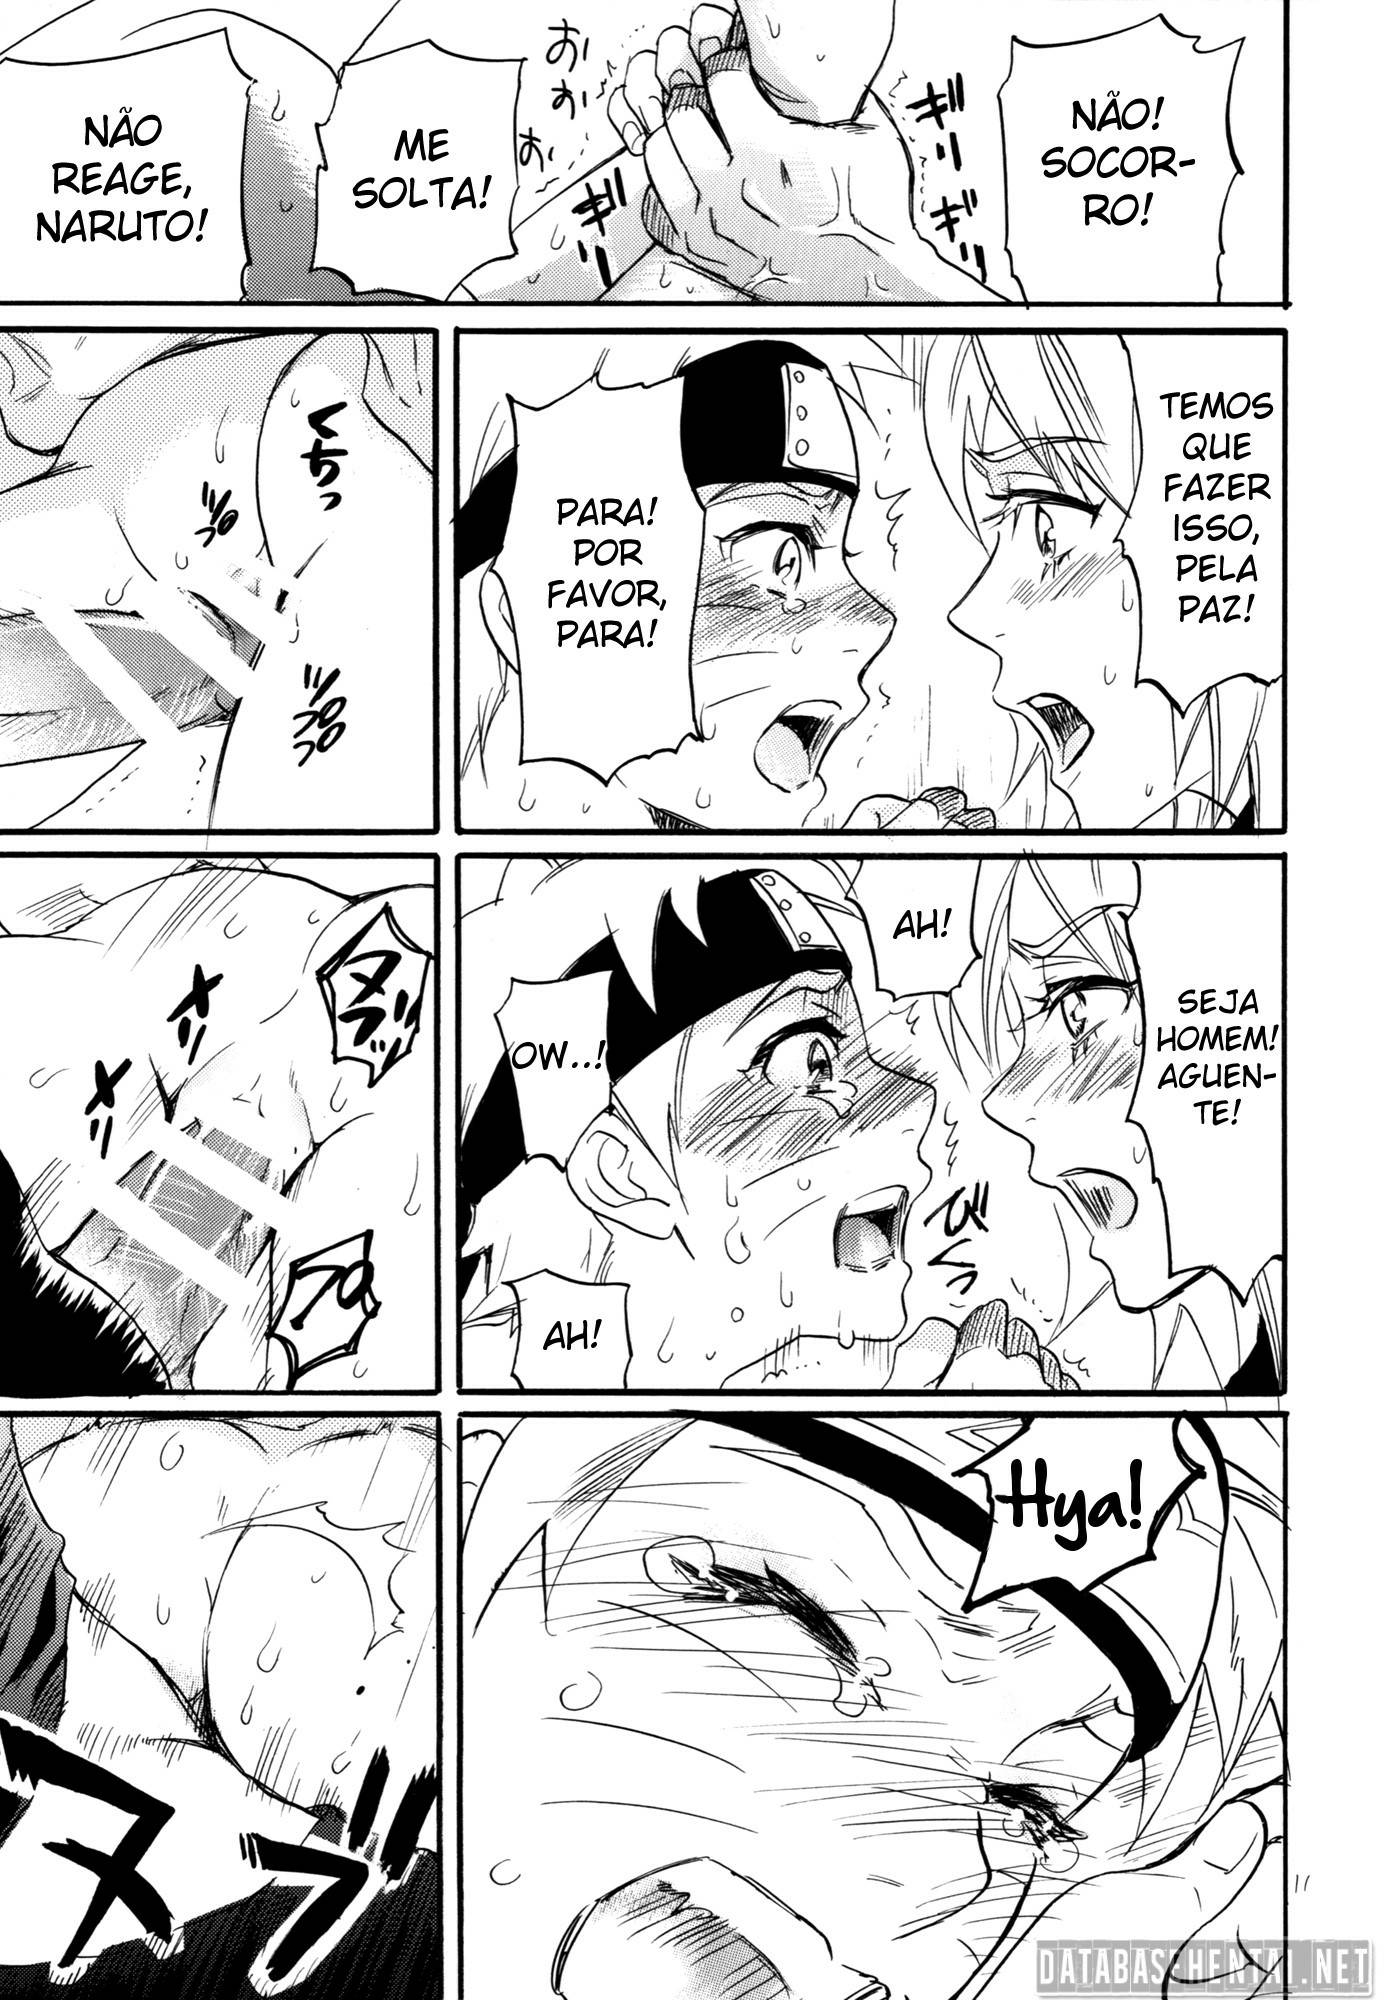 Sasuke comendo o naruto Hentai